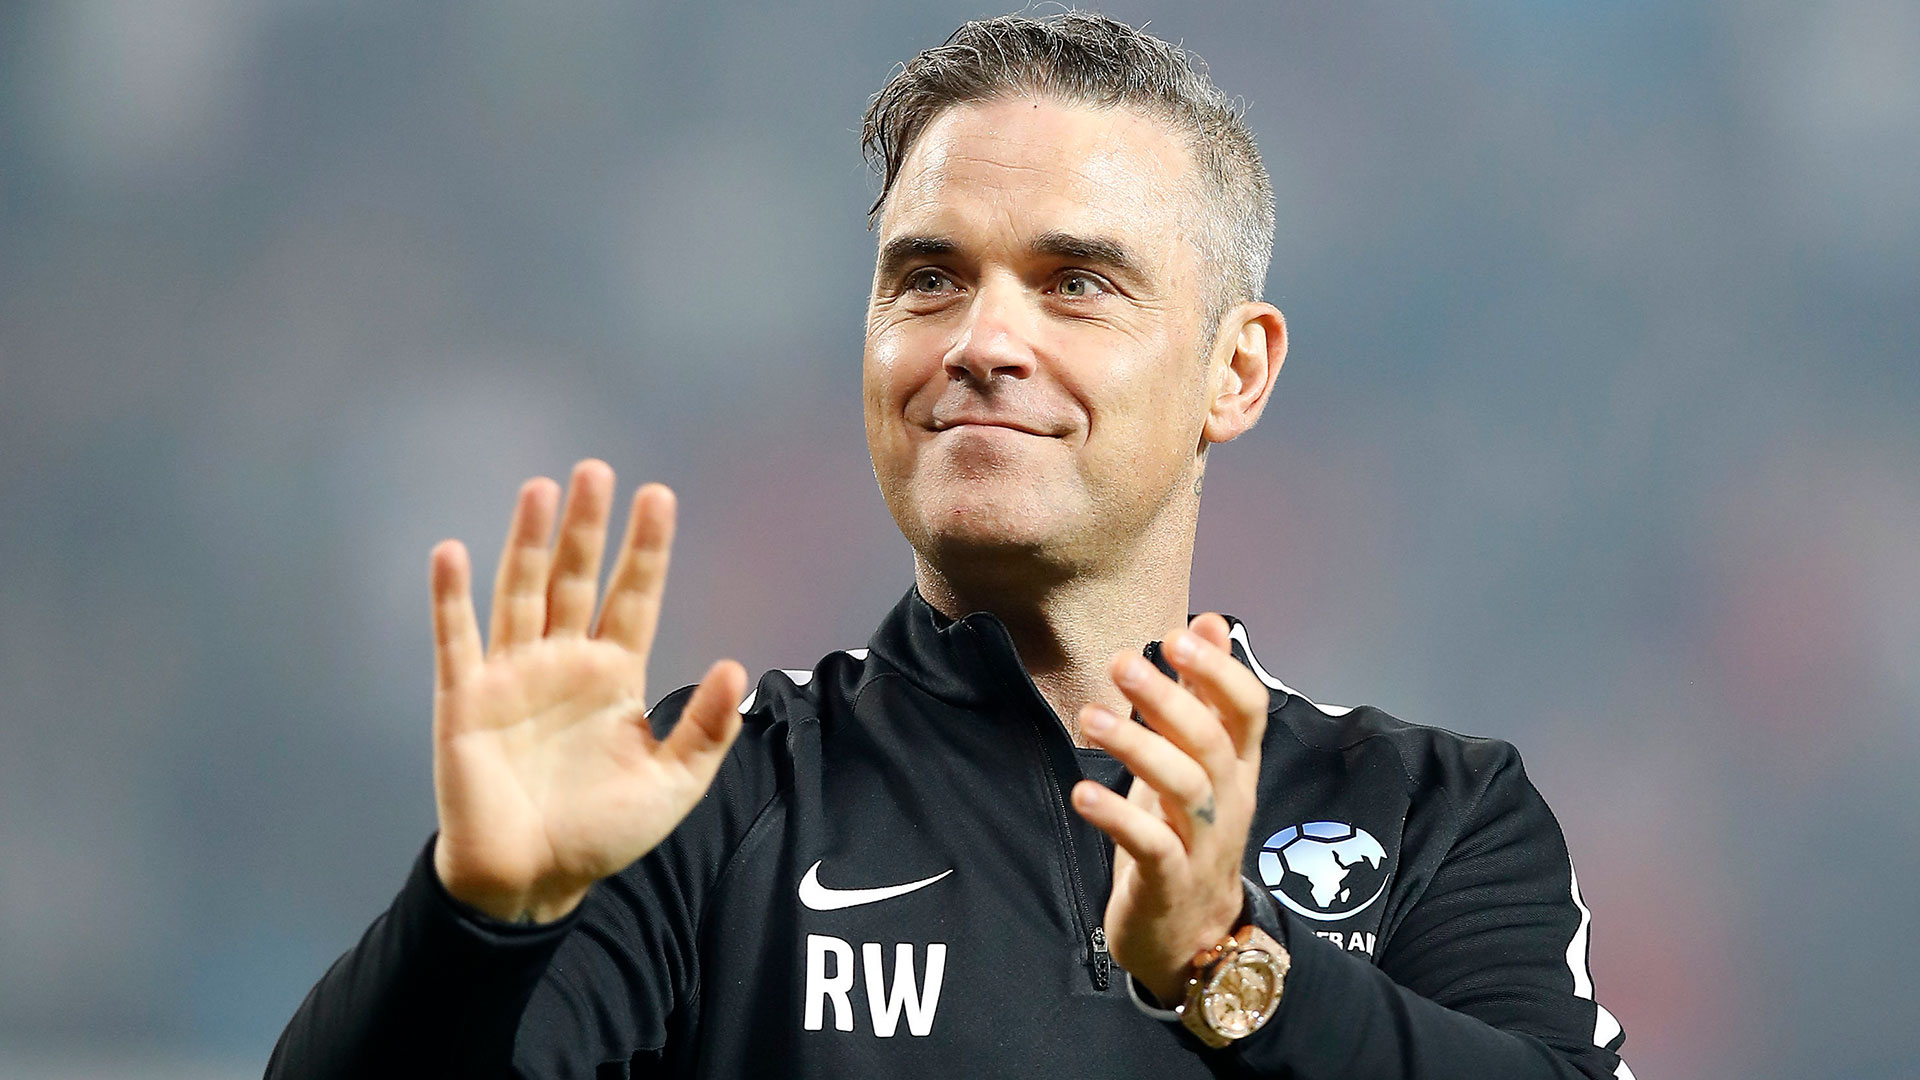 Robbie Williams es fanático del fútbol y no pierde oportunidad de ser parte de la forma que sea